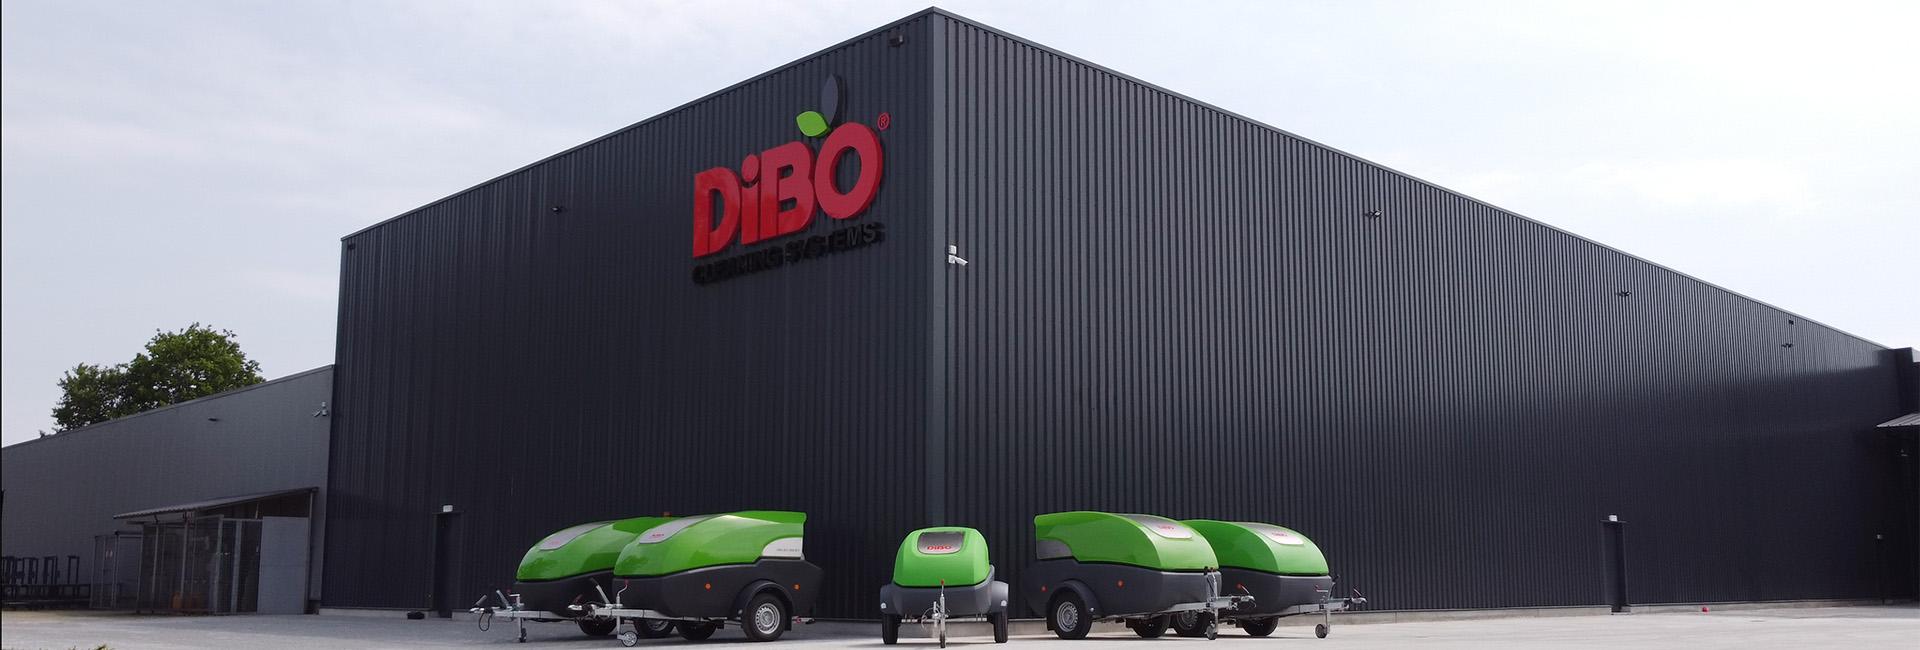 DiBO hogedruktrailers opgesteld voor transport 